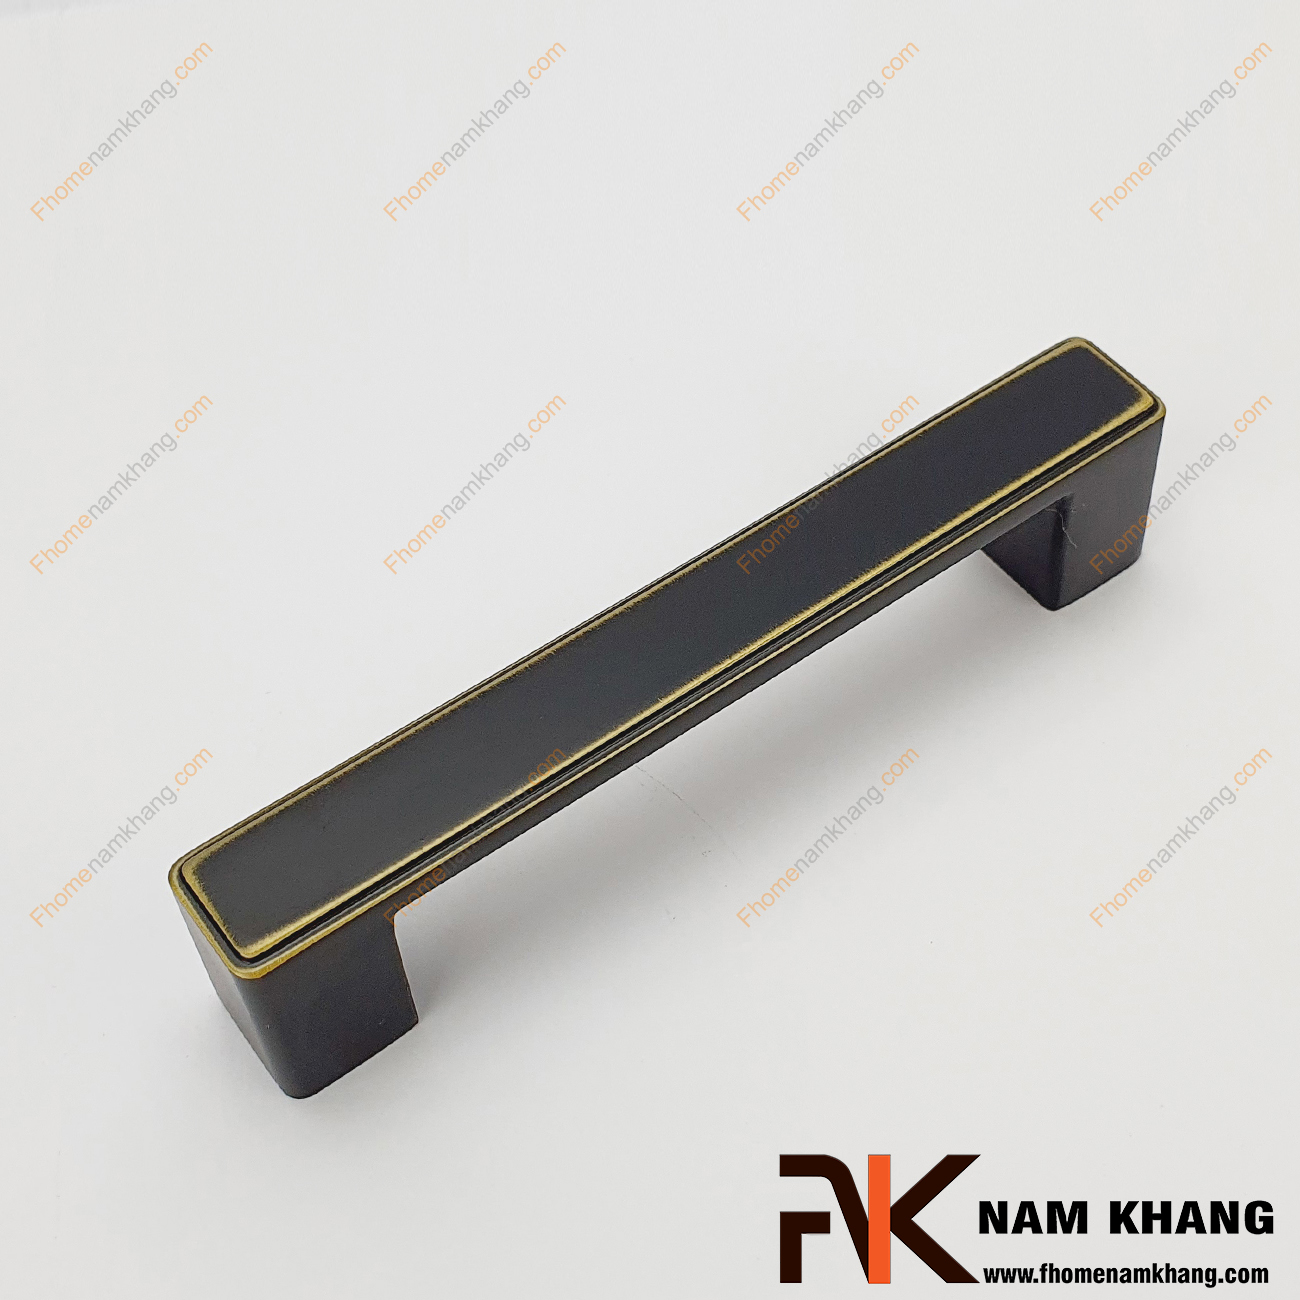 Sản phẩm Tay nắm cửa tủ hiện đại mạ màu đen vàng NK026-DV vuông khối được thiết kế dựa trên hợp kim chất lượng khuôn dạng vuông tạo cảm giác cầm nắm vô cùng chắc chắn và thao tác thực hiện cũng vô cùng dễ dàng.